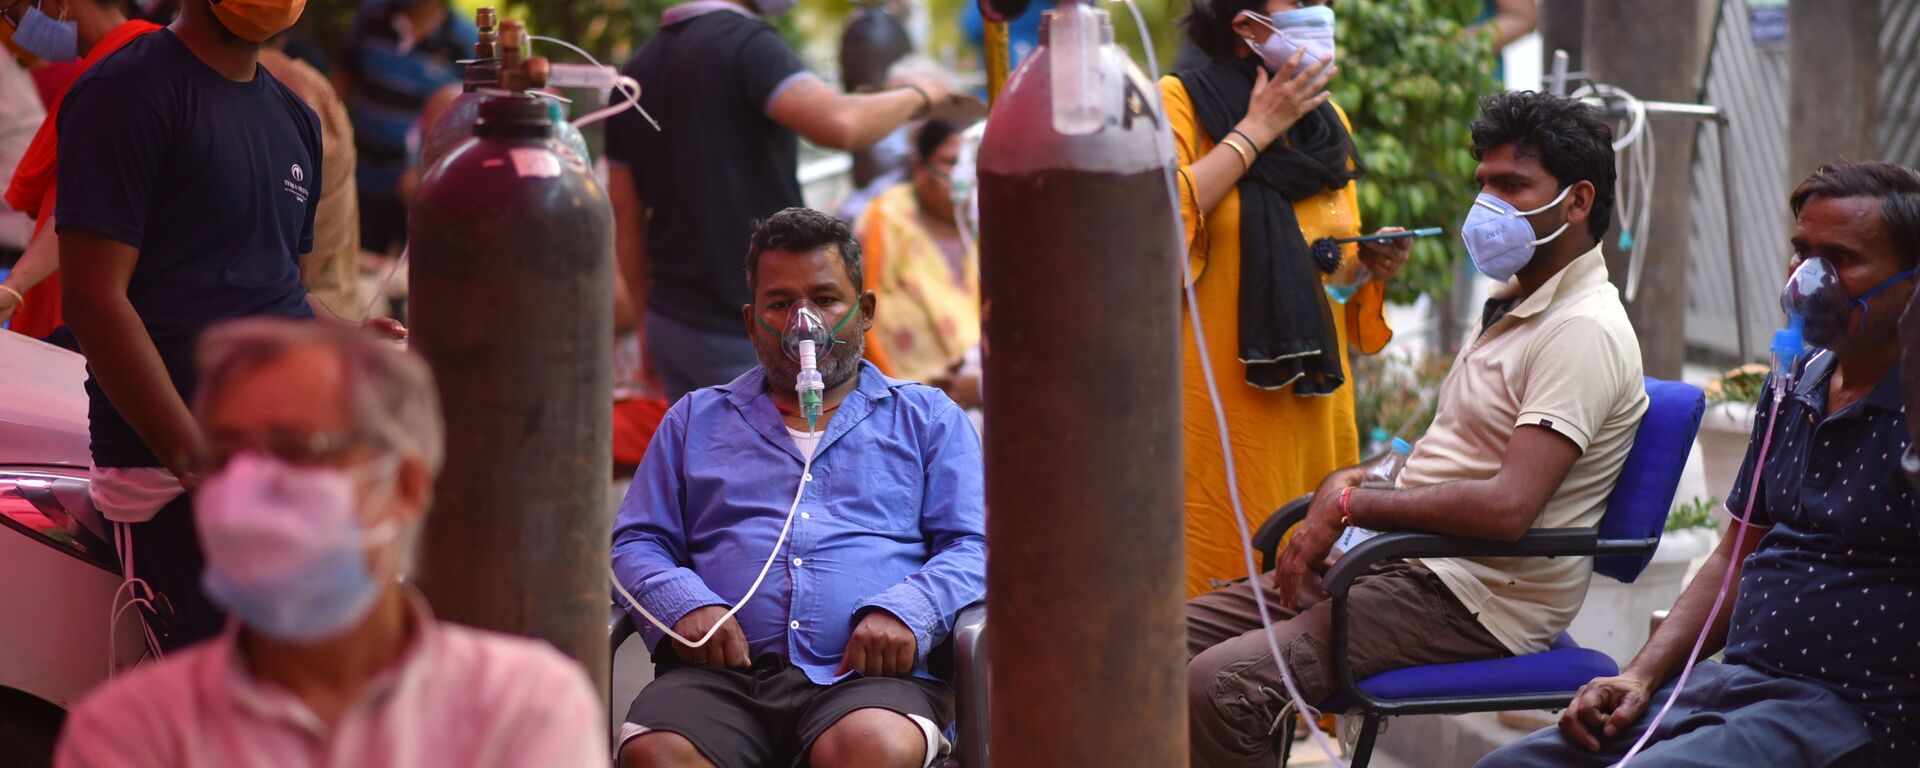 Những người gặp vấn đề về hô hấp được hỗ trợ oxy miễn phí tại Gurudwar ở Delhi - Sputnik Việt Nam, 1920, 03.05.2021